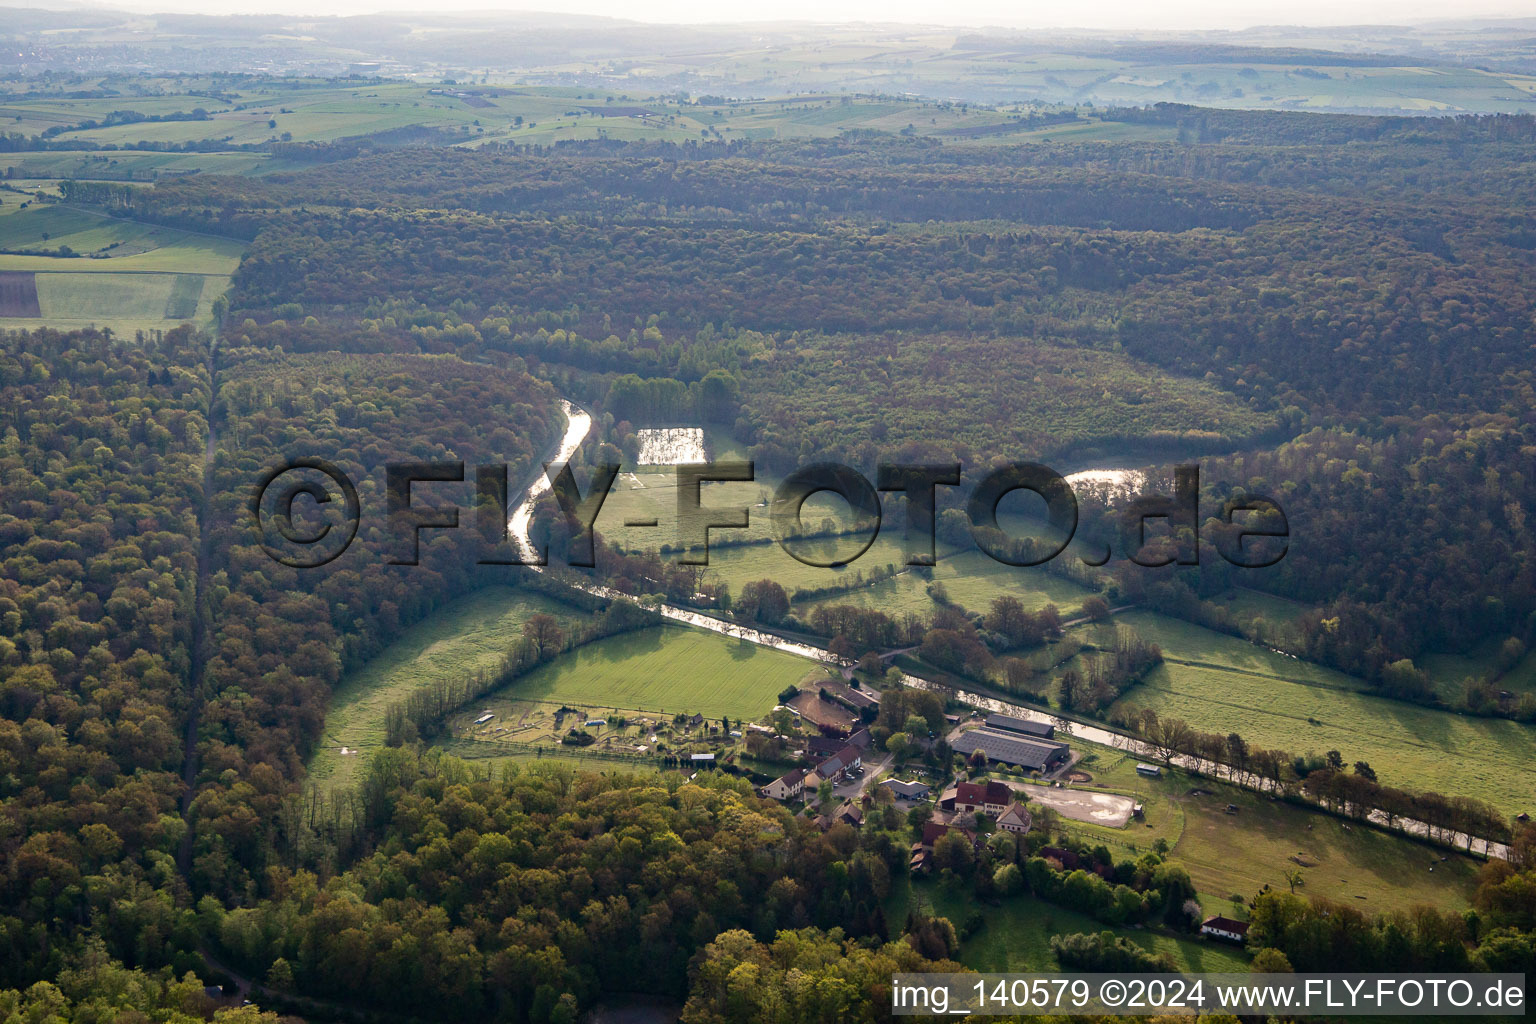 Vue aérienne de Parc Naturel de Cheval à Neuweyerhof à Altwiller dans le département Bas Rhin, France